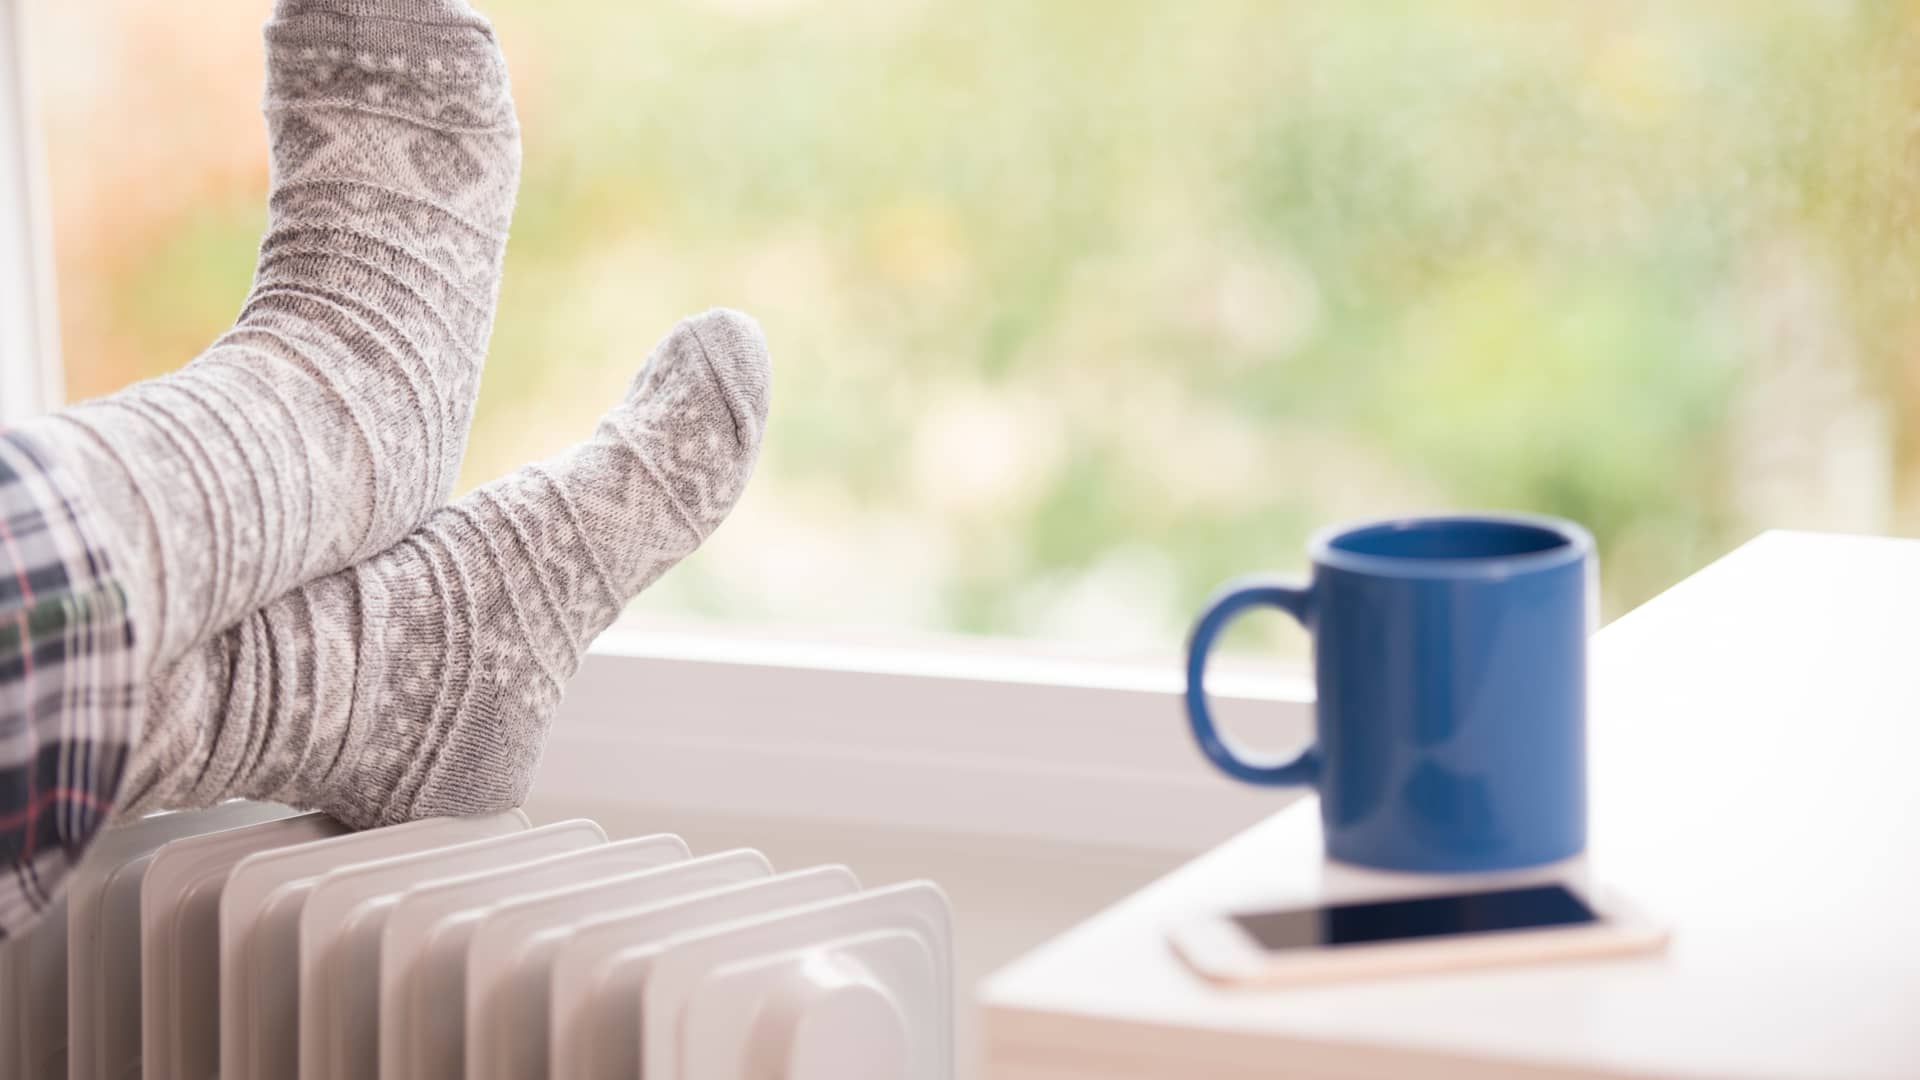 Persona descansa los pies en un radiador mientras su taza y móvil reposan en la mesilla, siguiendo nuestros consejos conseguira ahorrar en su calefacción